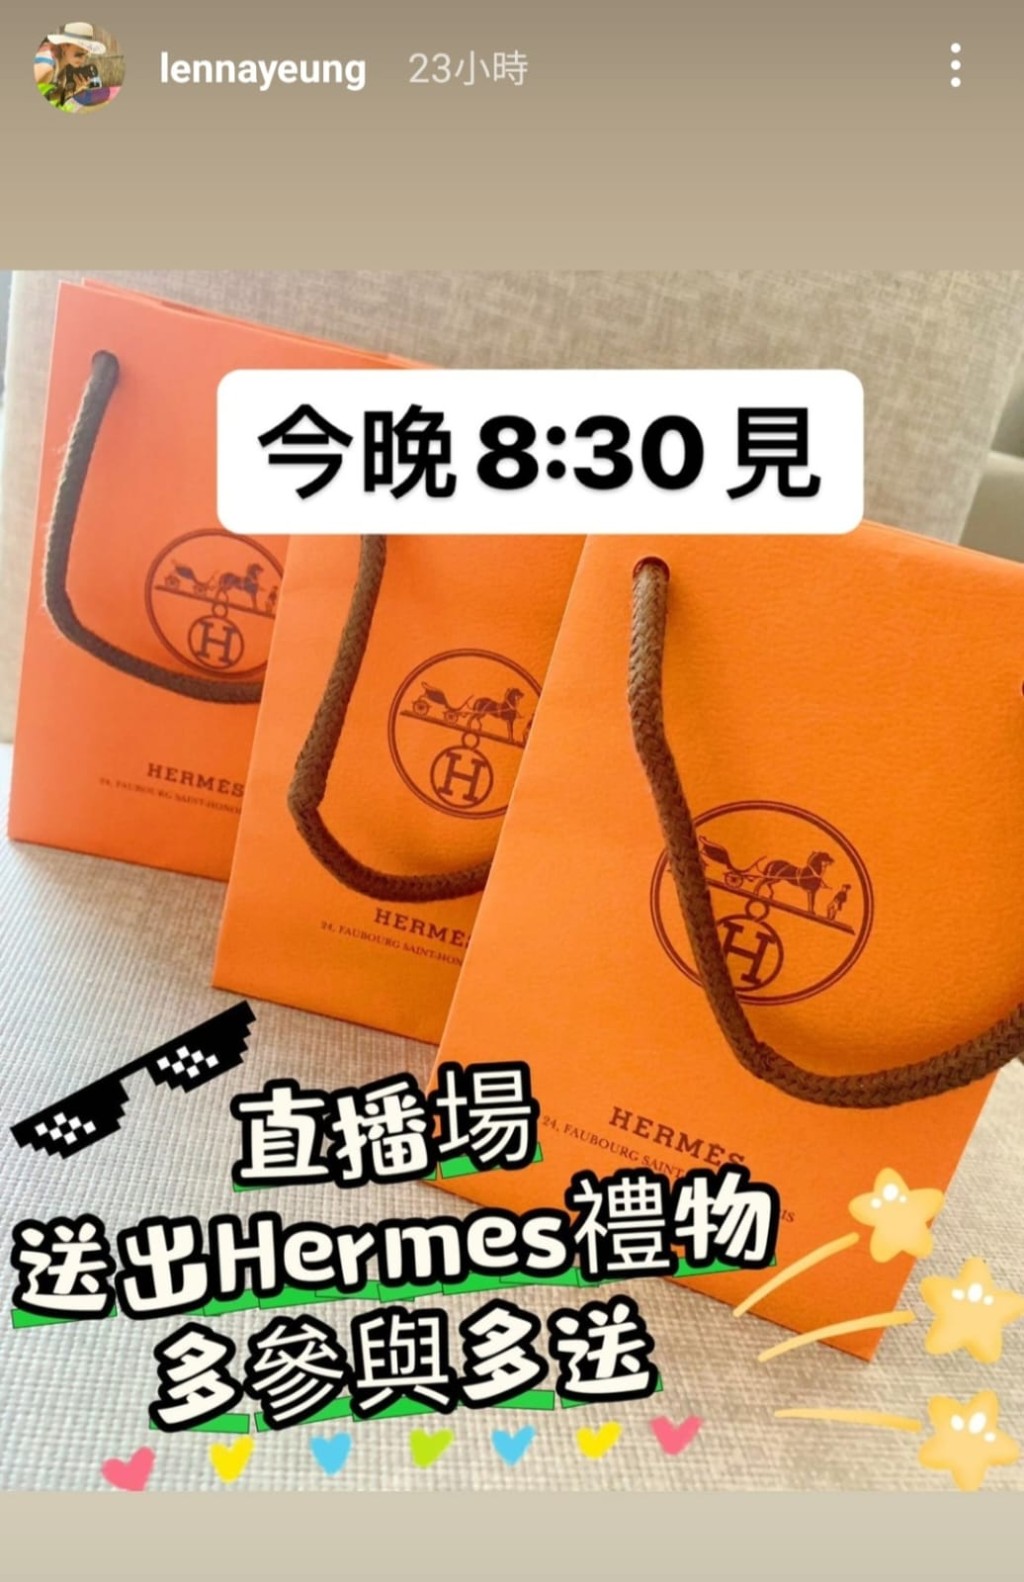 杨卓娜昨日在限时动态晒出三袋Hermès，表示是直播送的礼物。